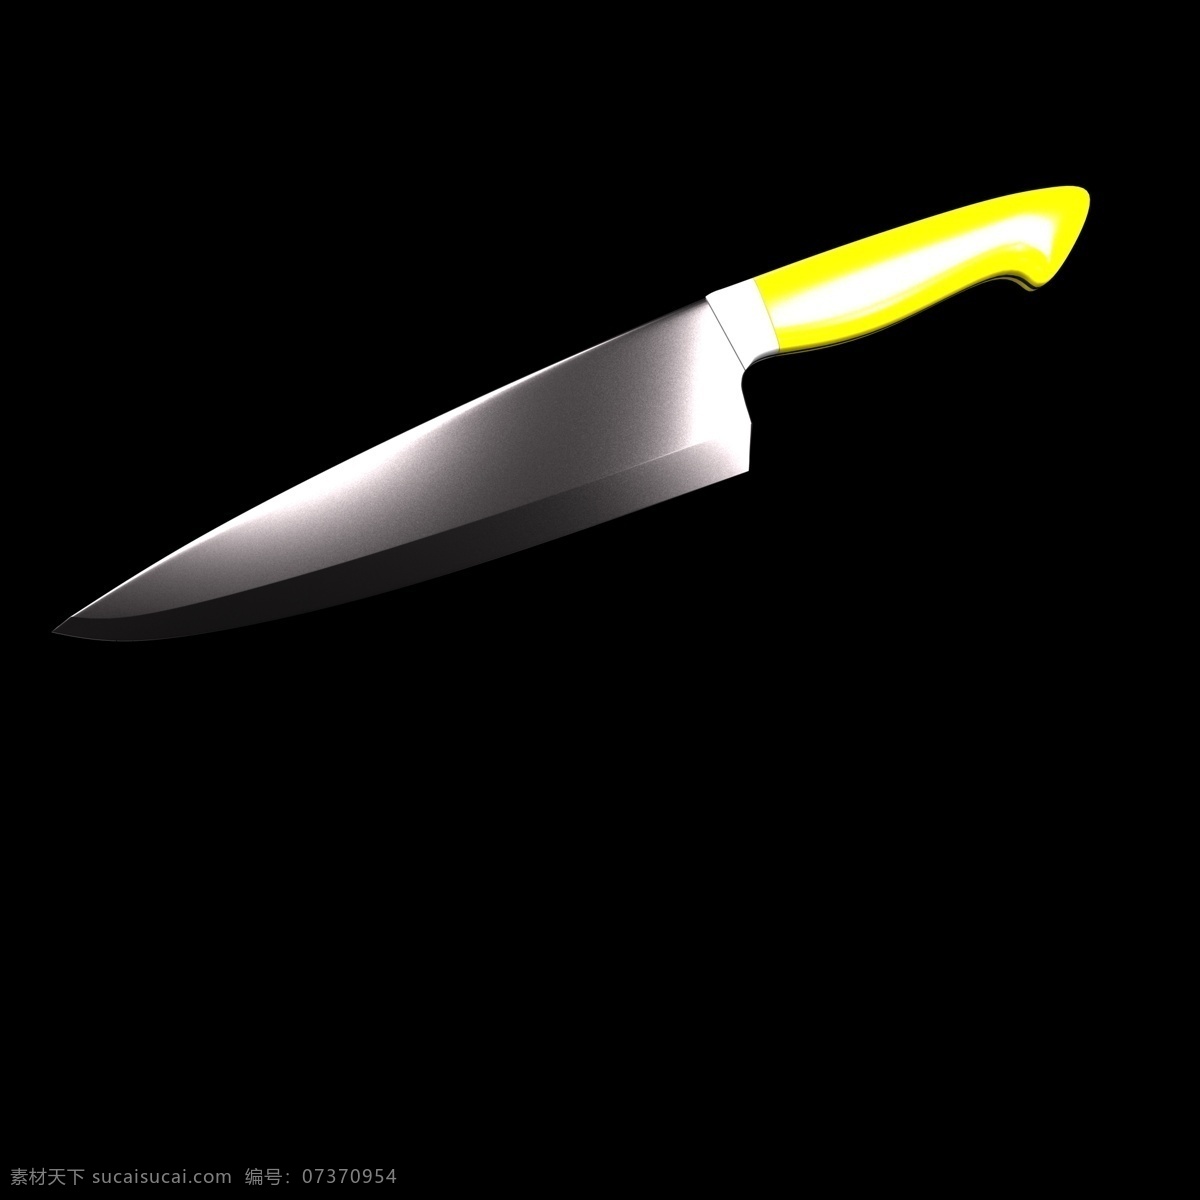 黄色 小刀 插图 装饰 c4d 立体 创意刀具 水果刀 亮 色系 黄色水果刀 不锈钢刀具